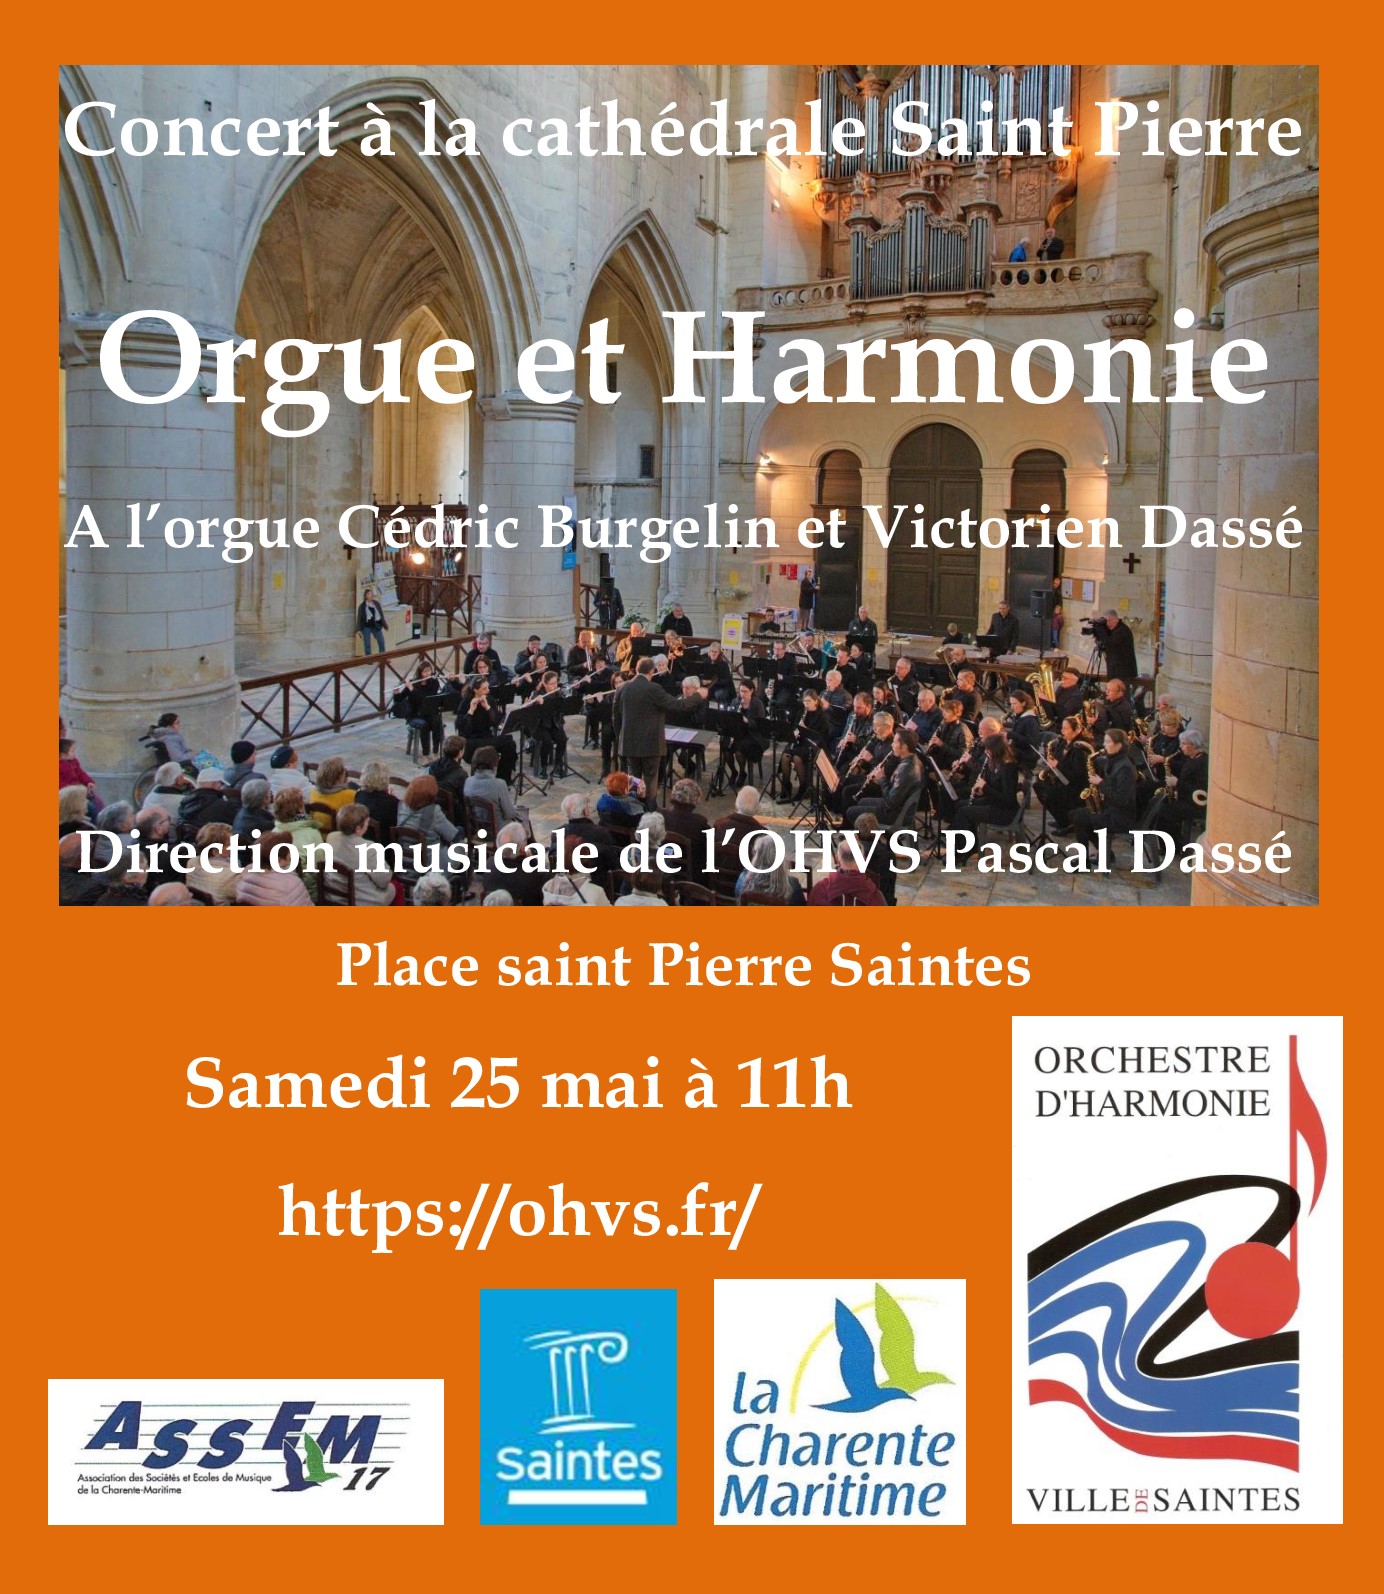 Concert à la cathédrale Saint Pierre 4